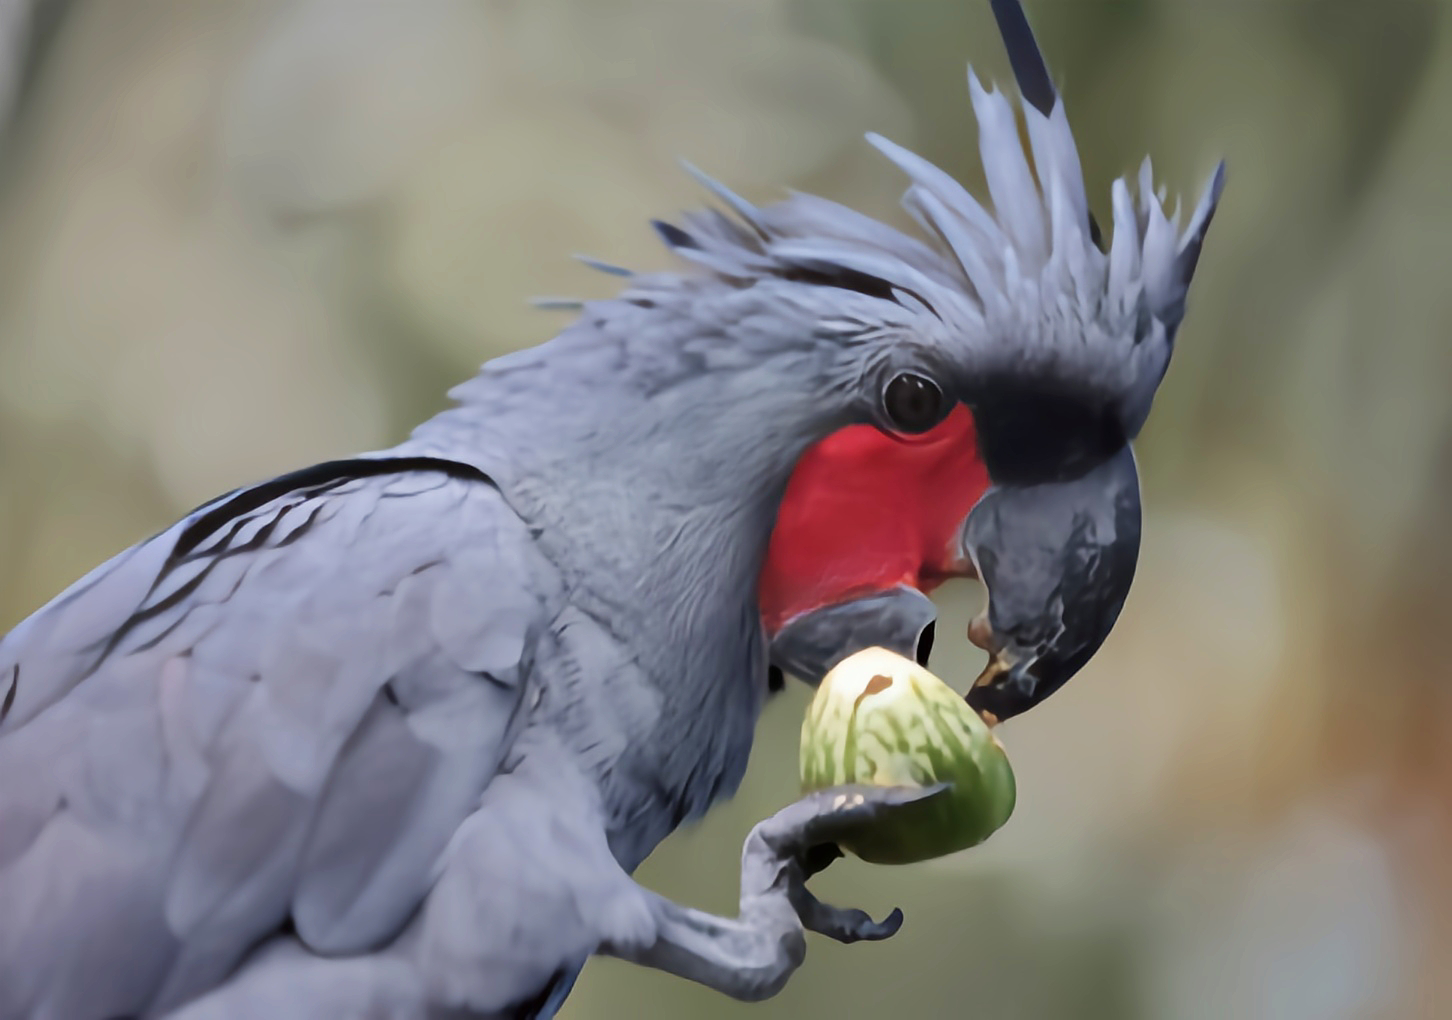 云安之城 的想法: 每天认识一种动物——棕榈凤头鹦鹉 